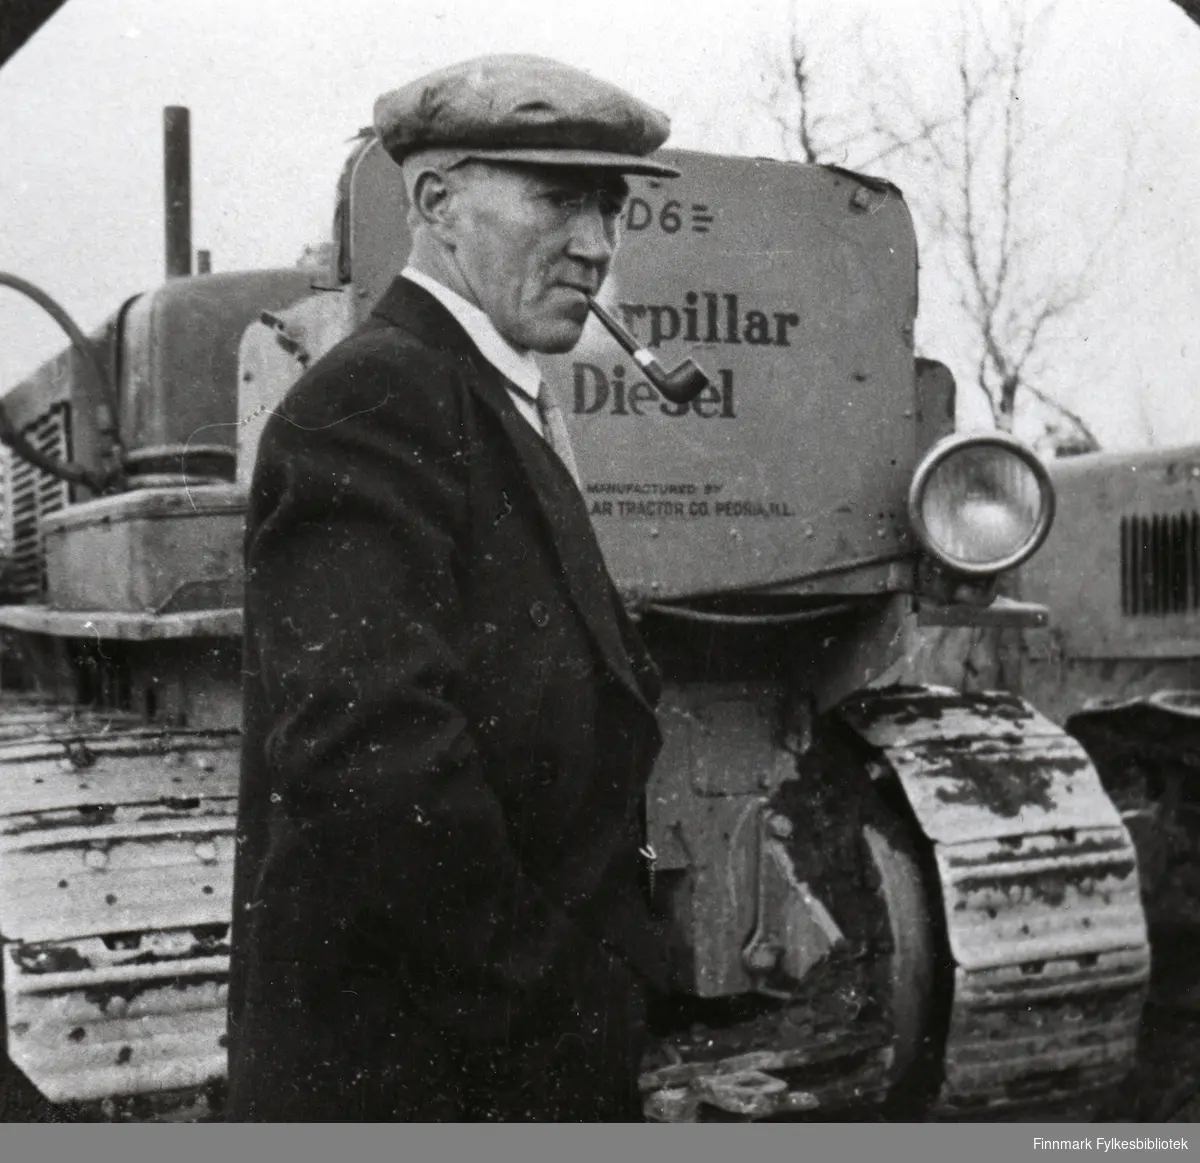 Gjennomslaget er gjort. Formann Ole Pedersen ved siden av bulldozerne (bulldoser). 1940.